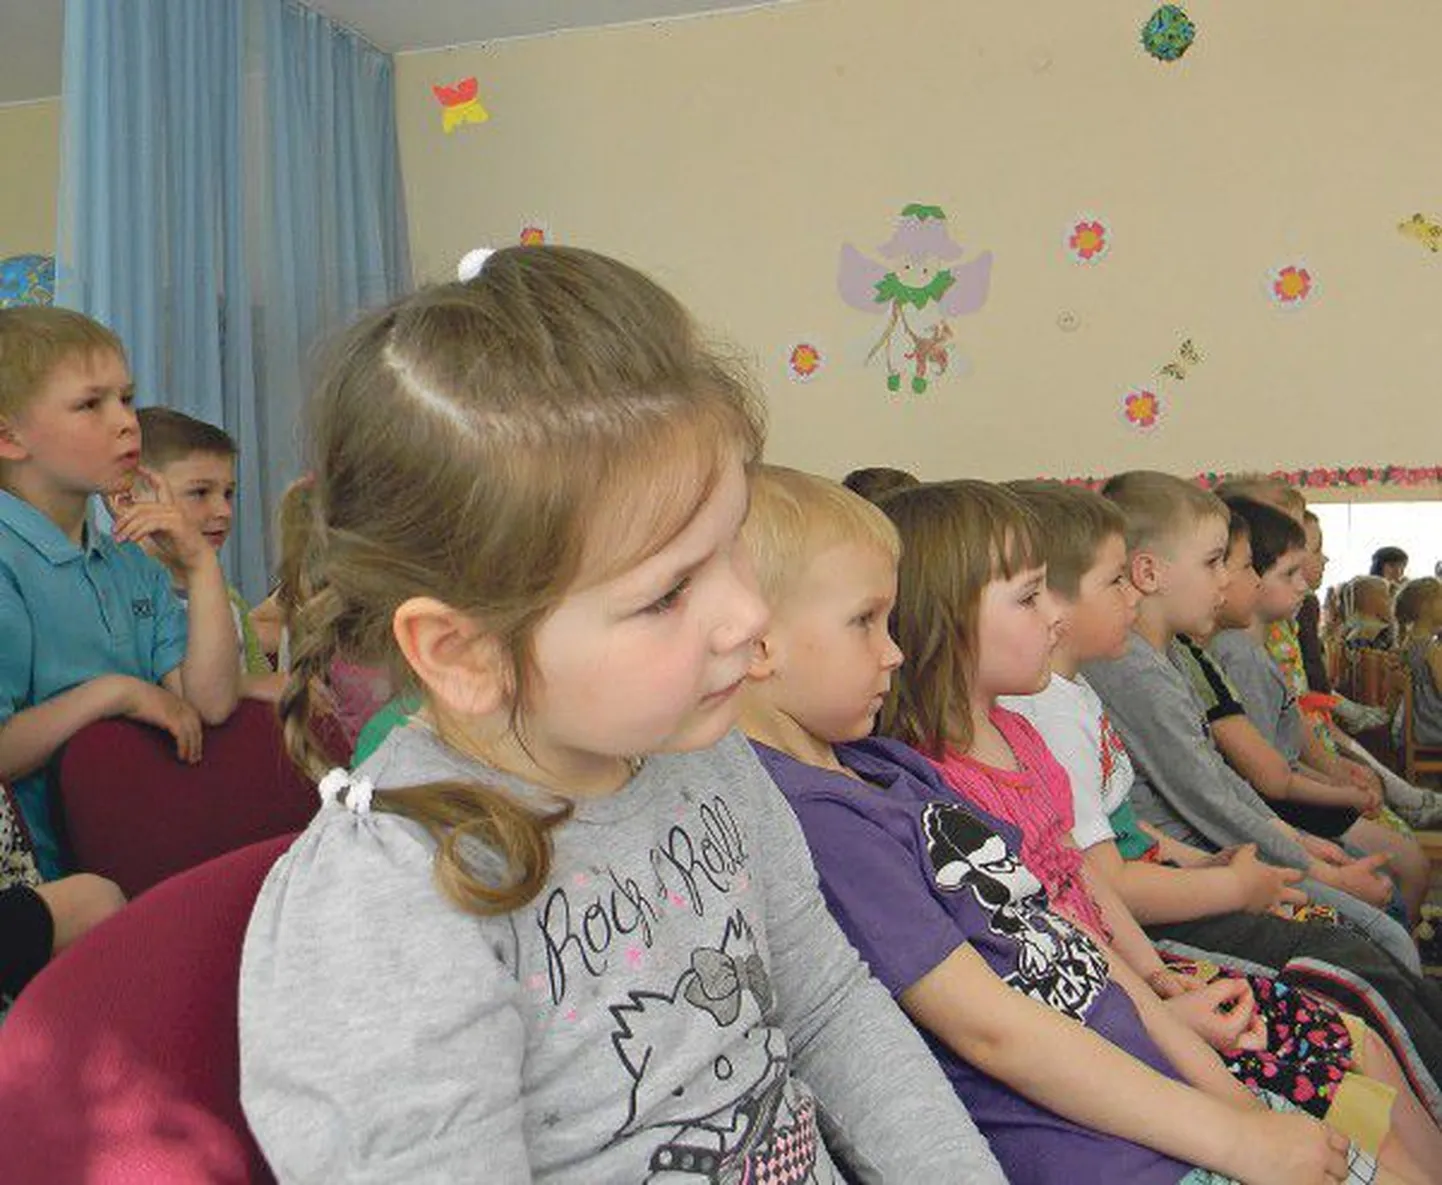 Пятилетней Анечке Федоровой (на переднем плане) из средней группы детского сада Sädemeke в спектакле теат­ра «Ильмарине» понравился и принц, и злодей.